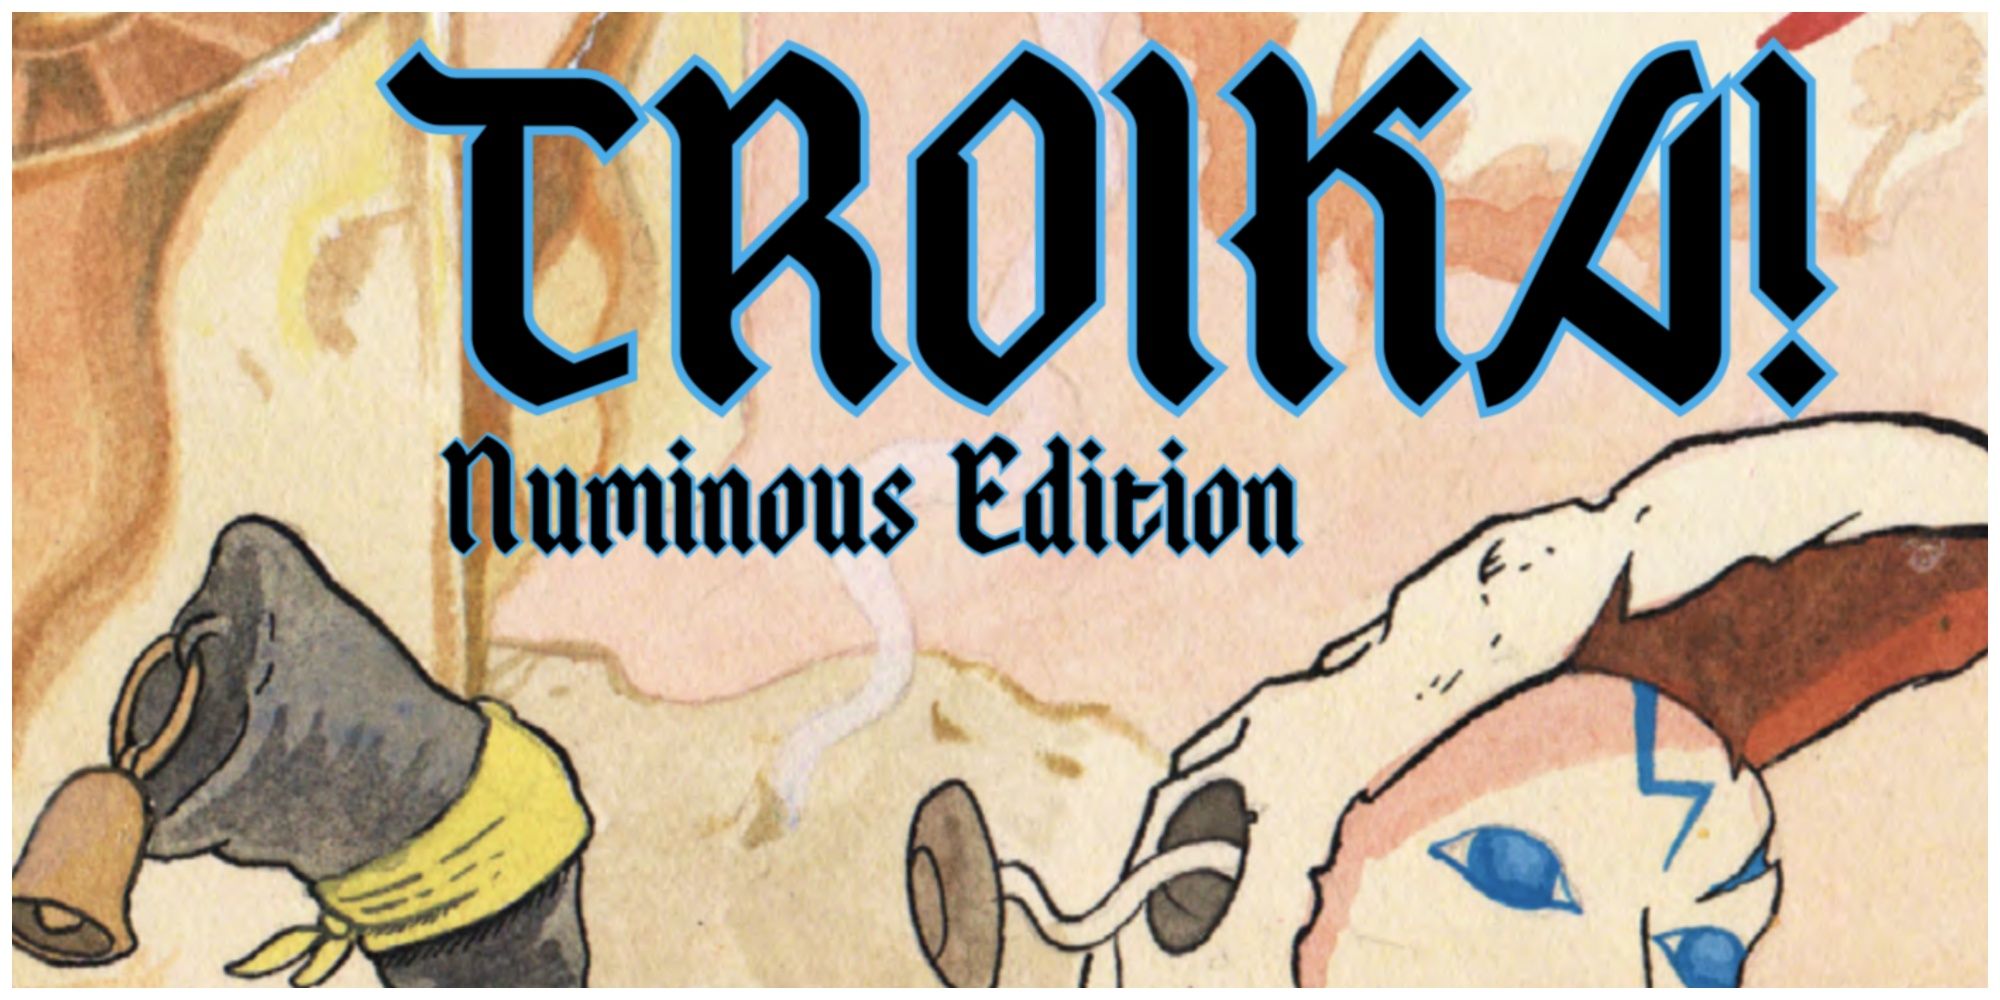 Troika! Numinous Edition title 